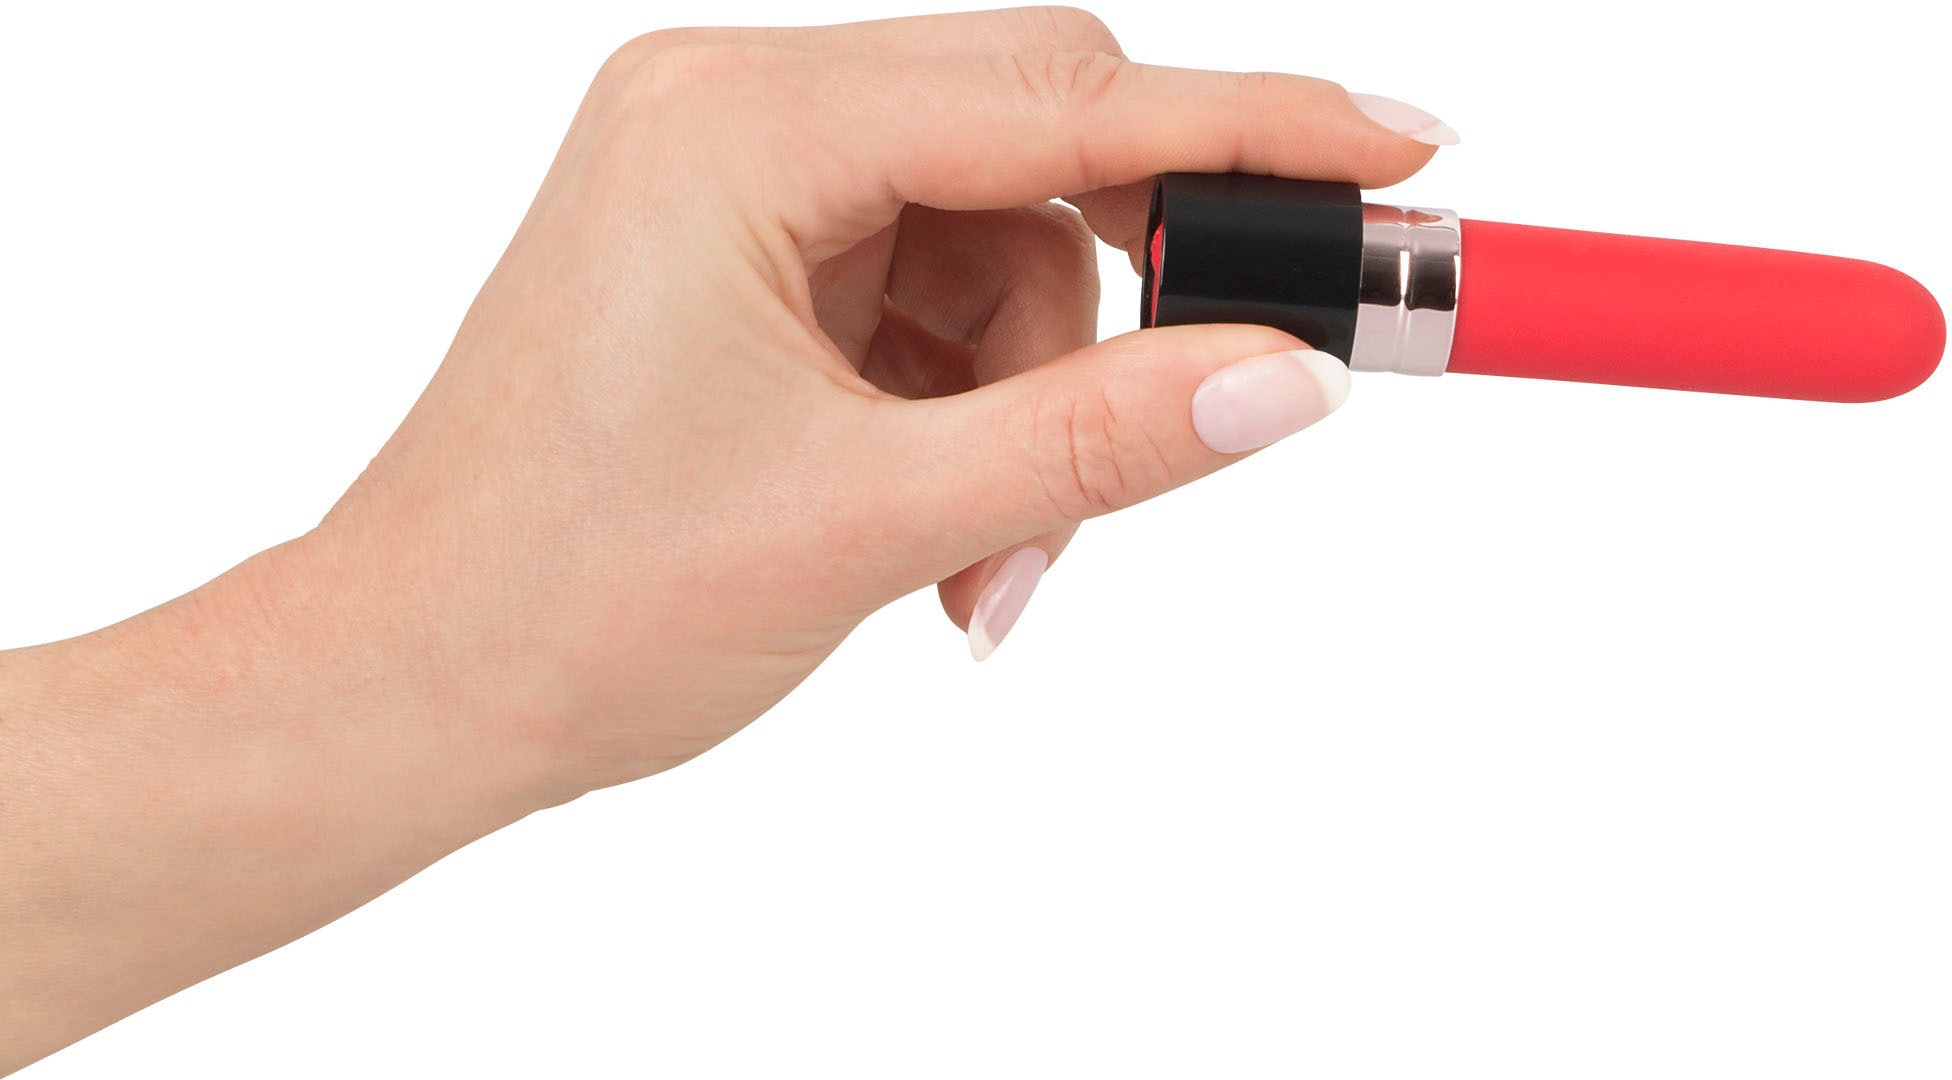 You2Toys Mini-Vibrator »Lipstick Vibrator«